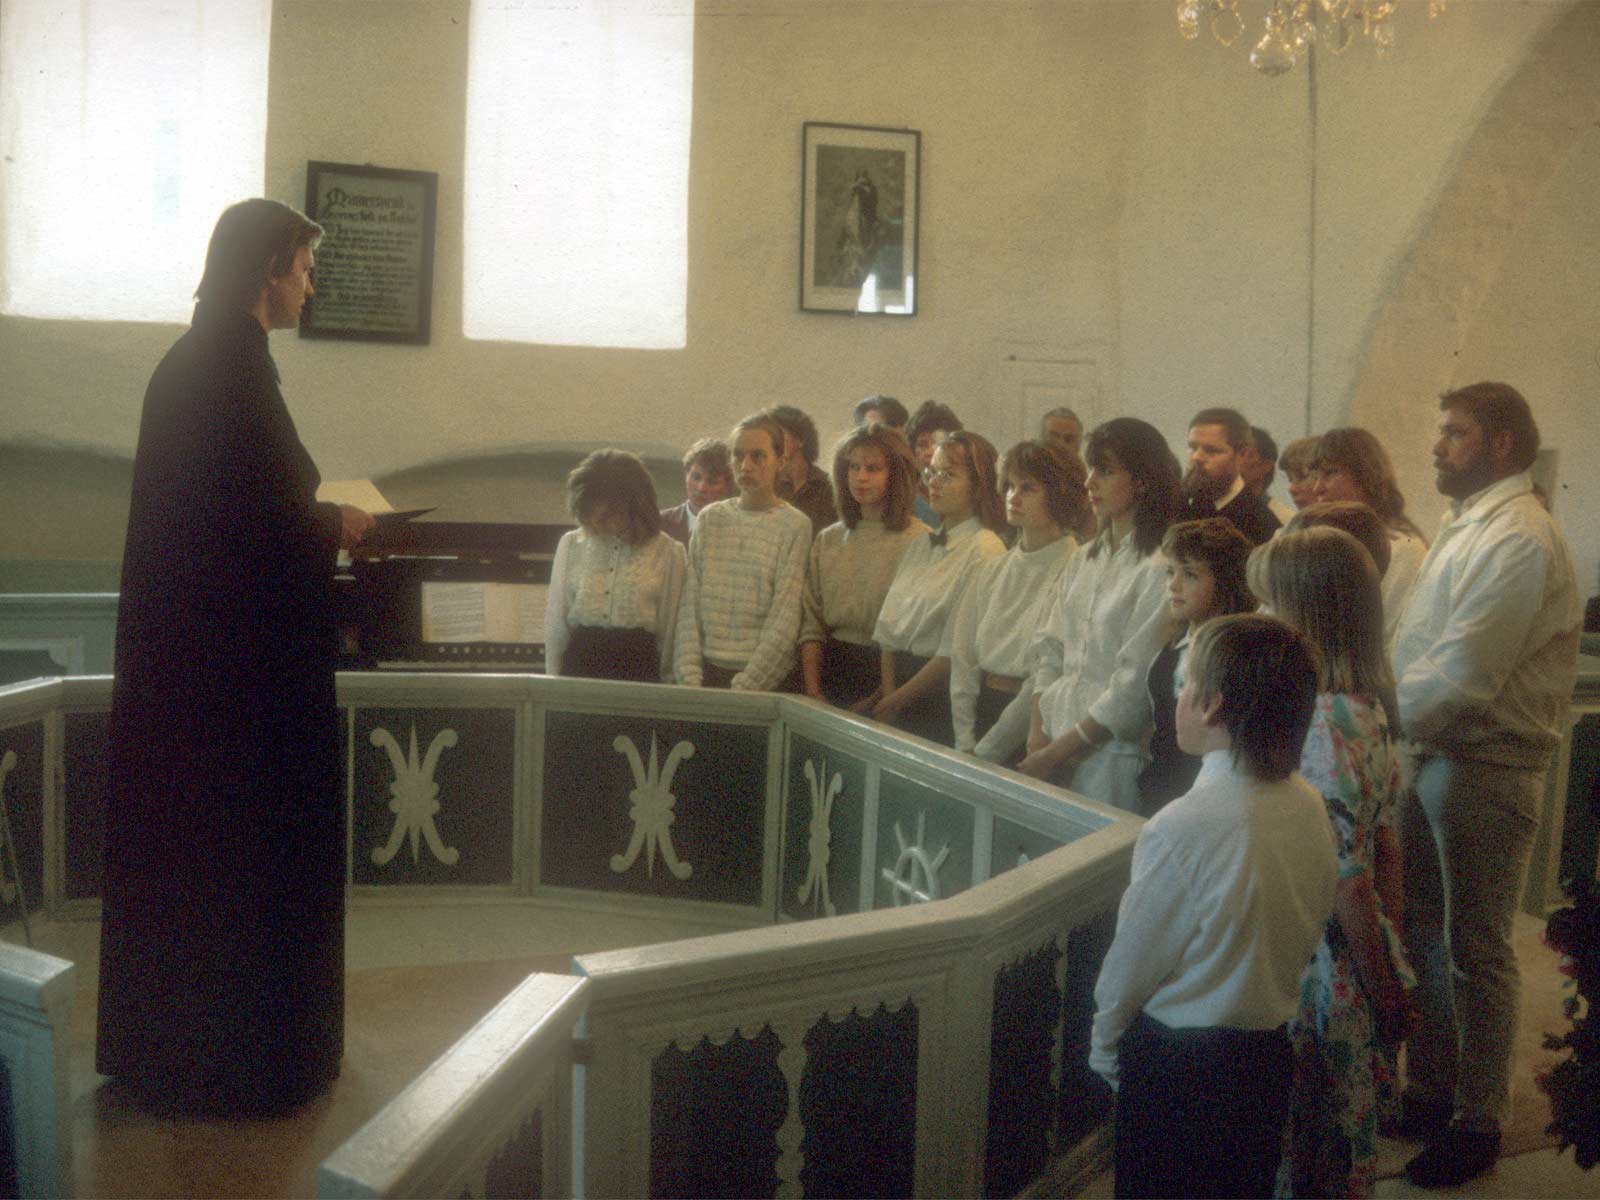 Leevi Reinaru talar till en grupp ungdomar och deras faddrar som blir döpta i Lääne-Nigula kyrka 3.6.1990.